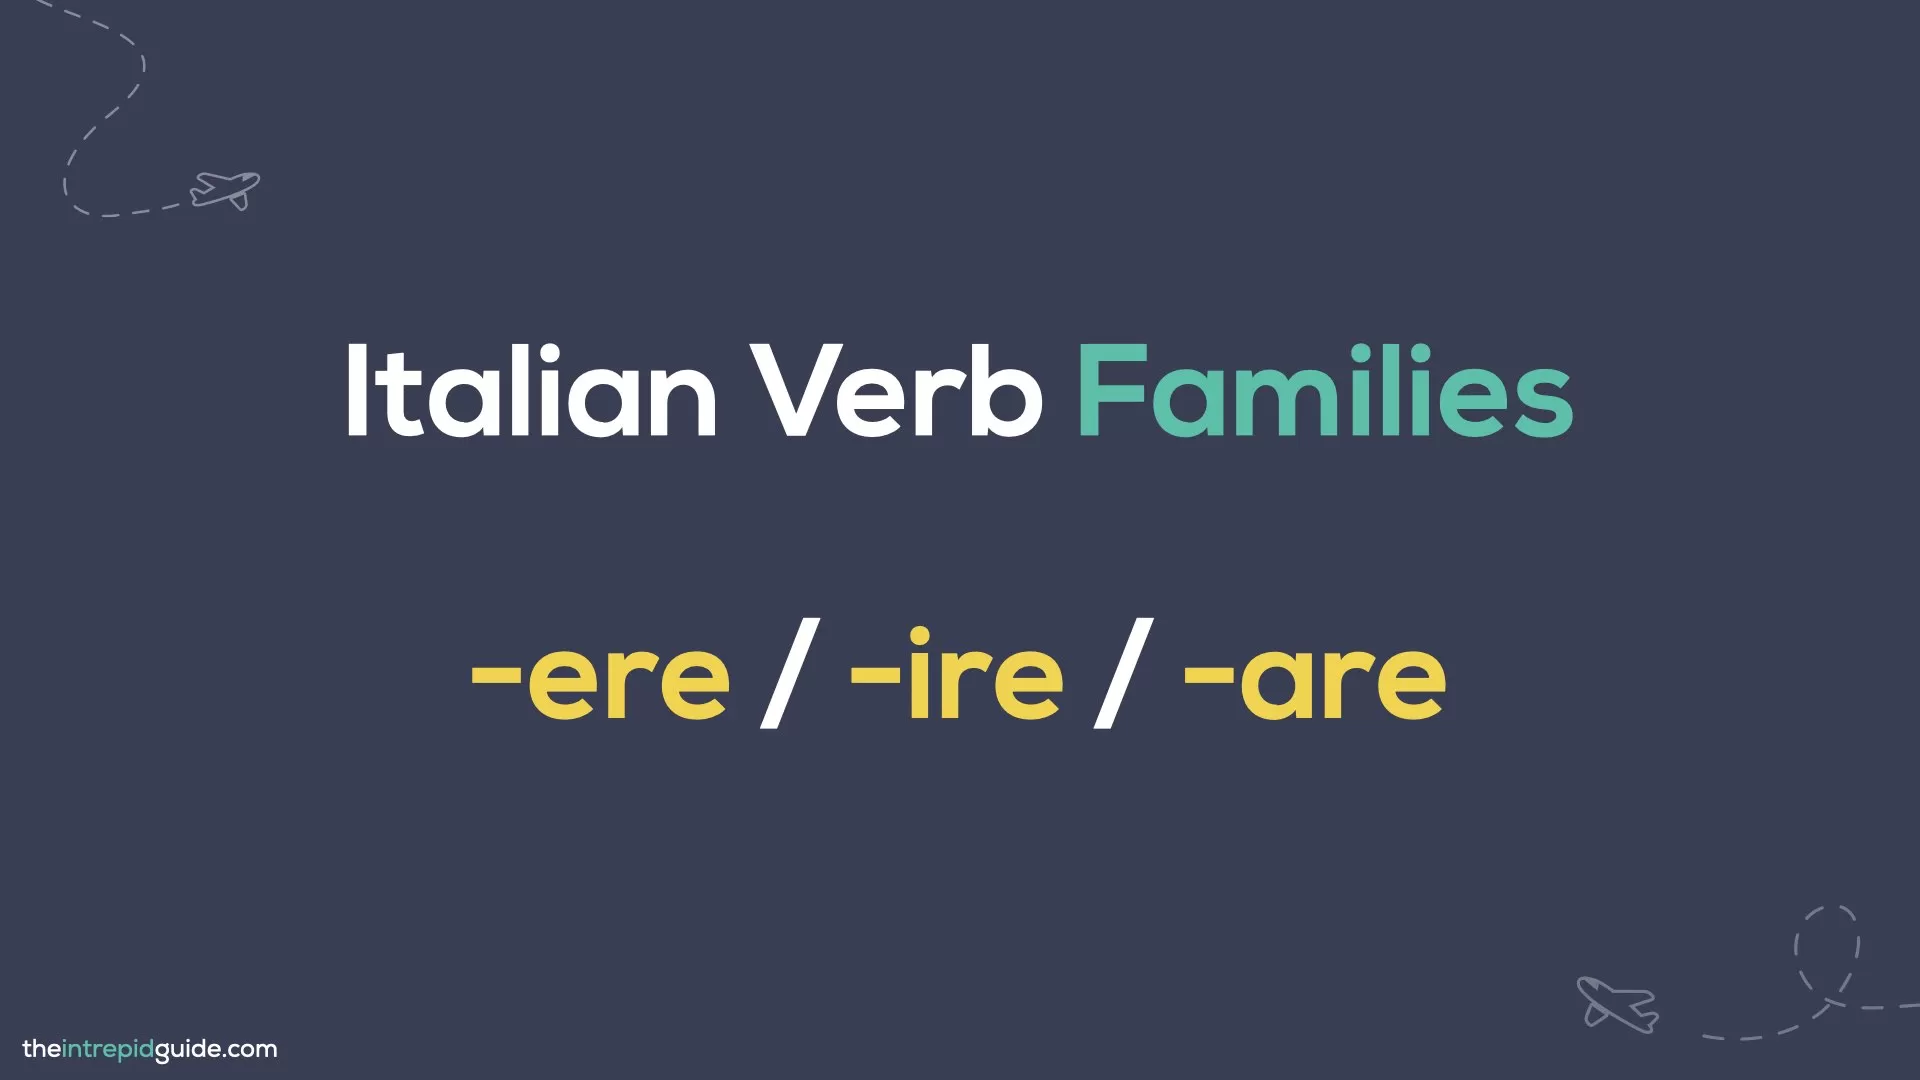 How to Conjugate Italian Verbs - Verbs Families